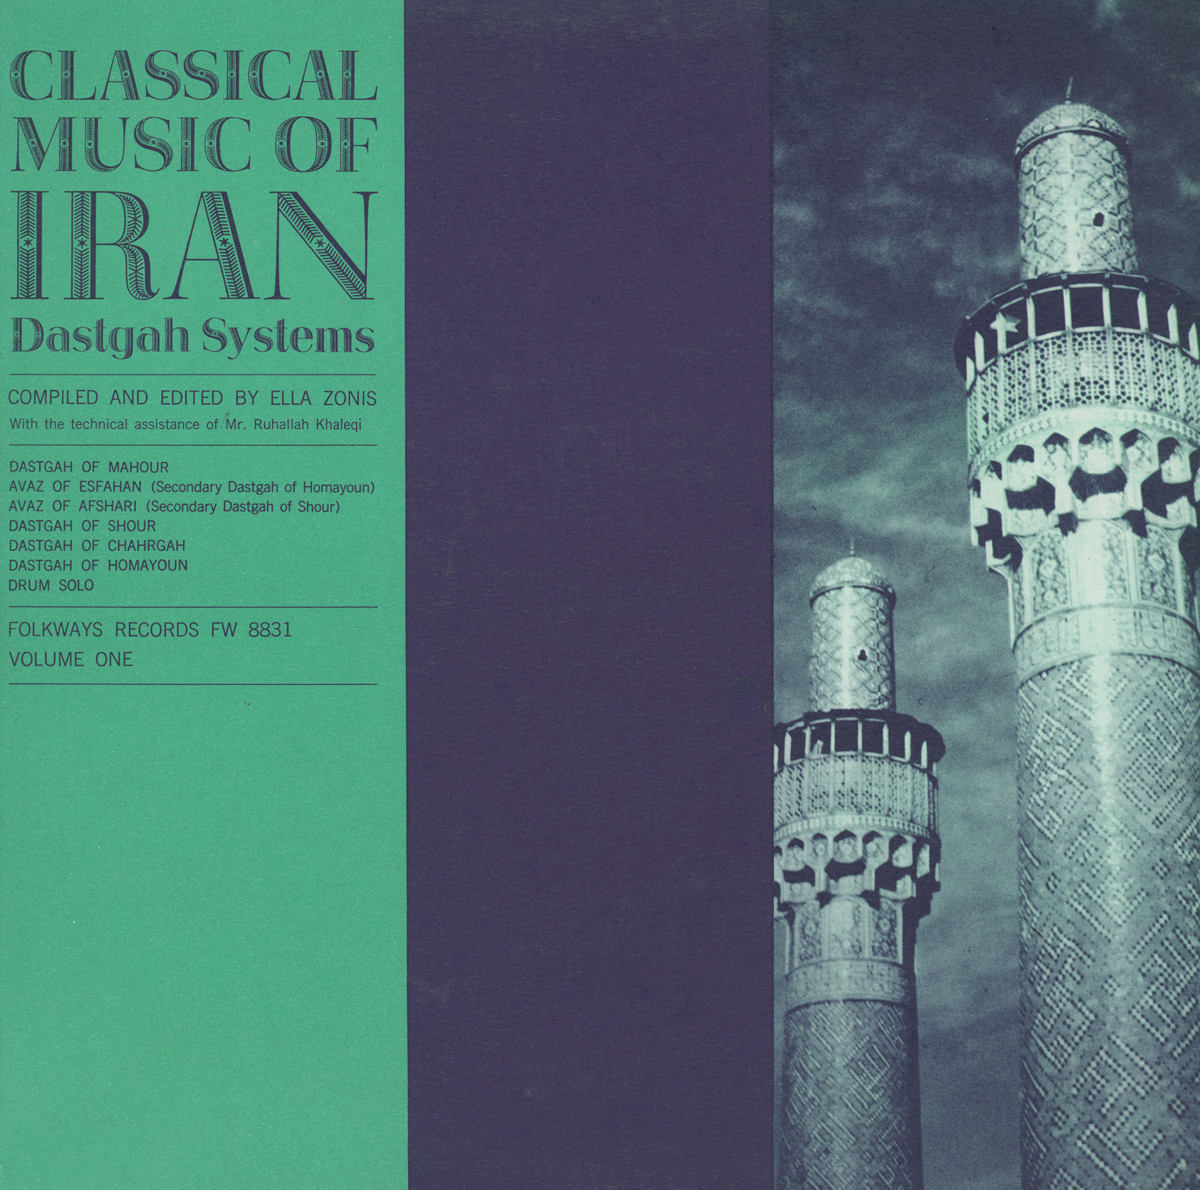 CLASSICAL MUSIC OF IRAN 1 / VA